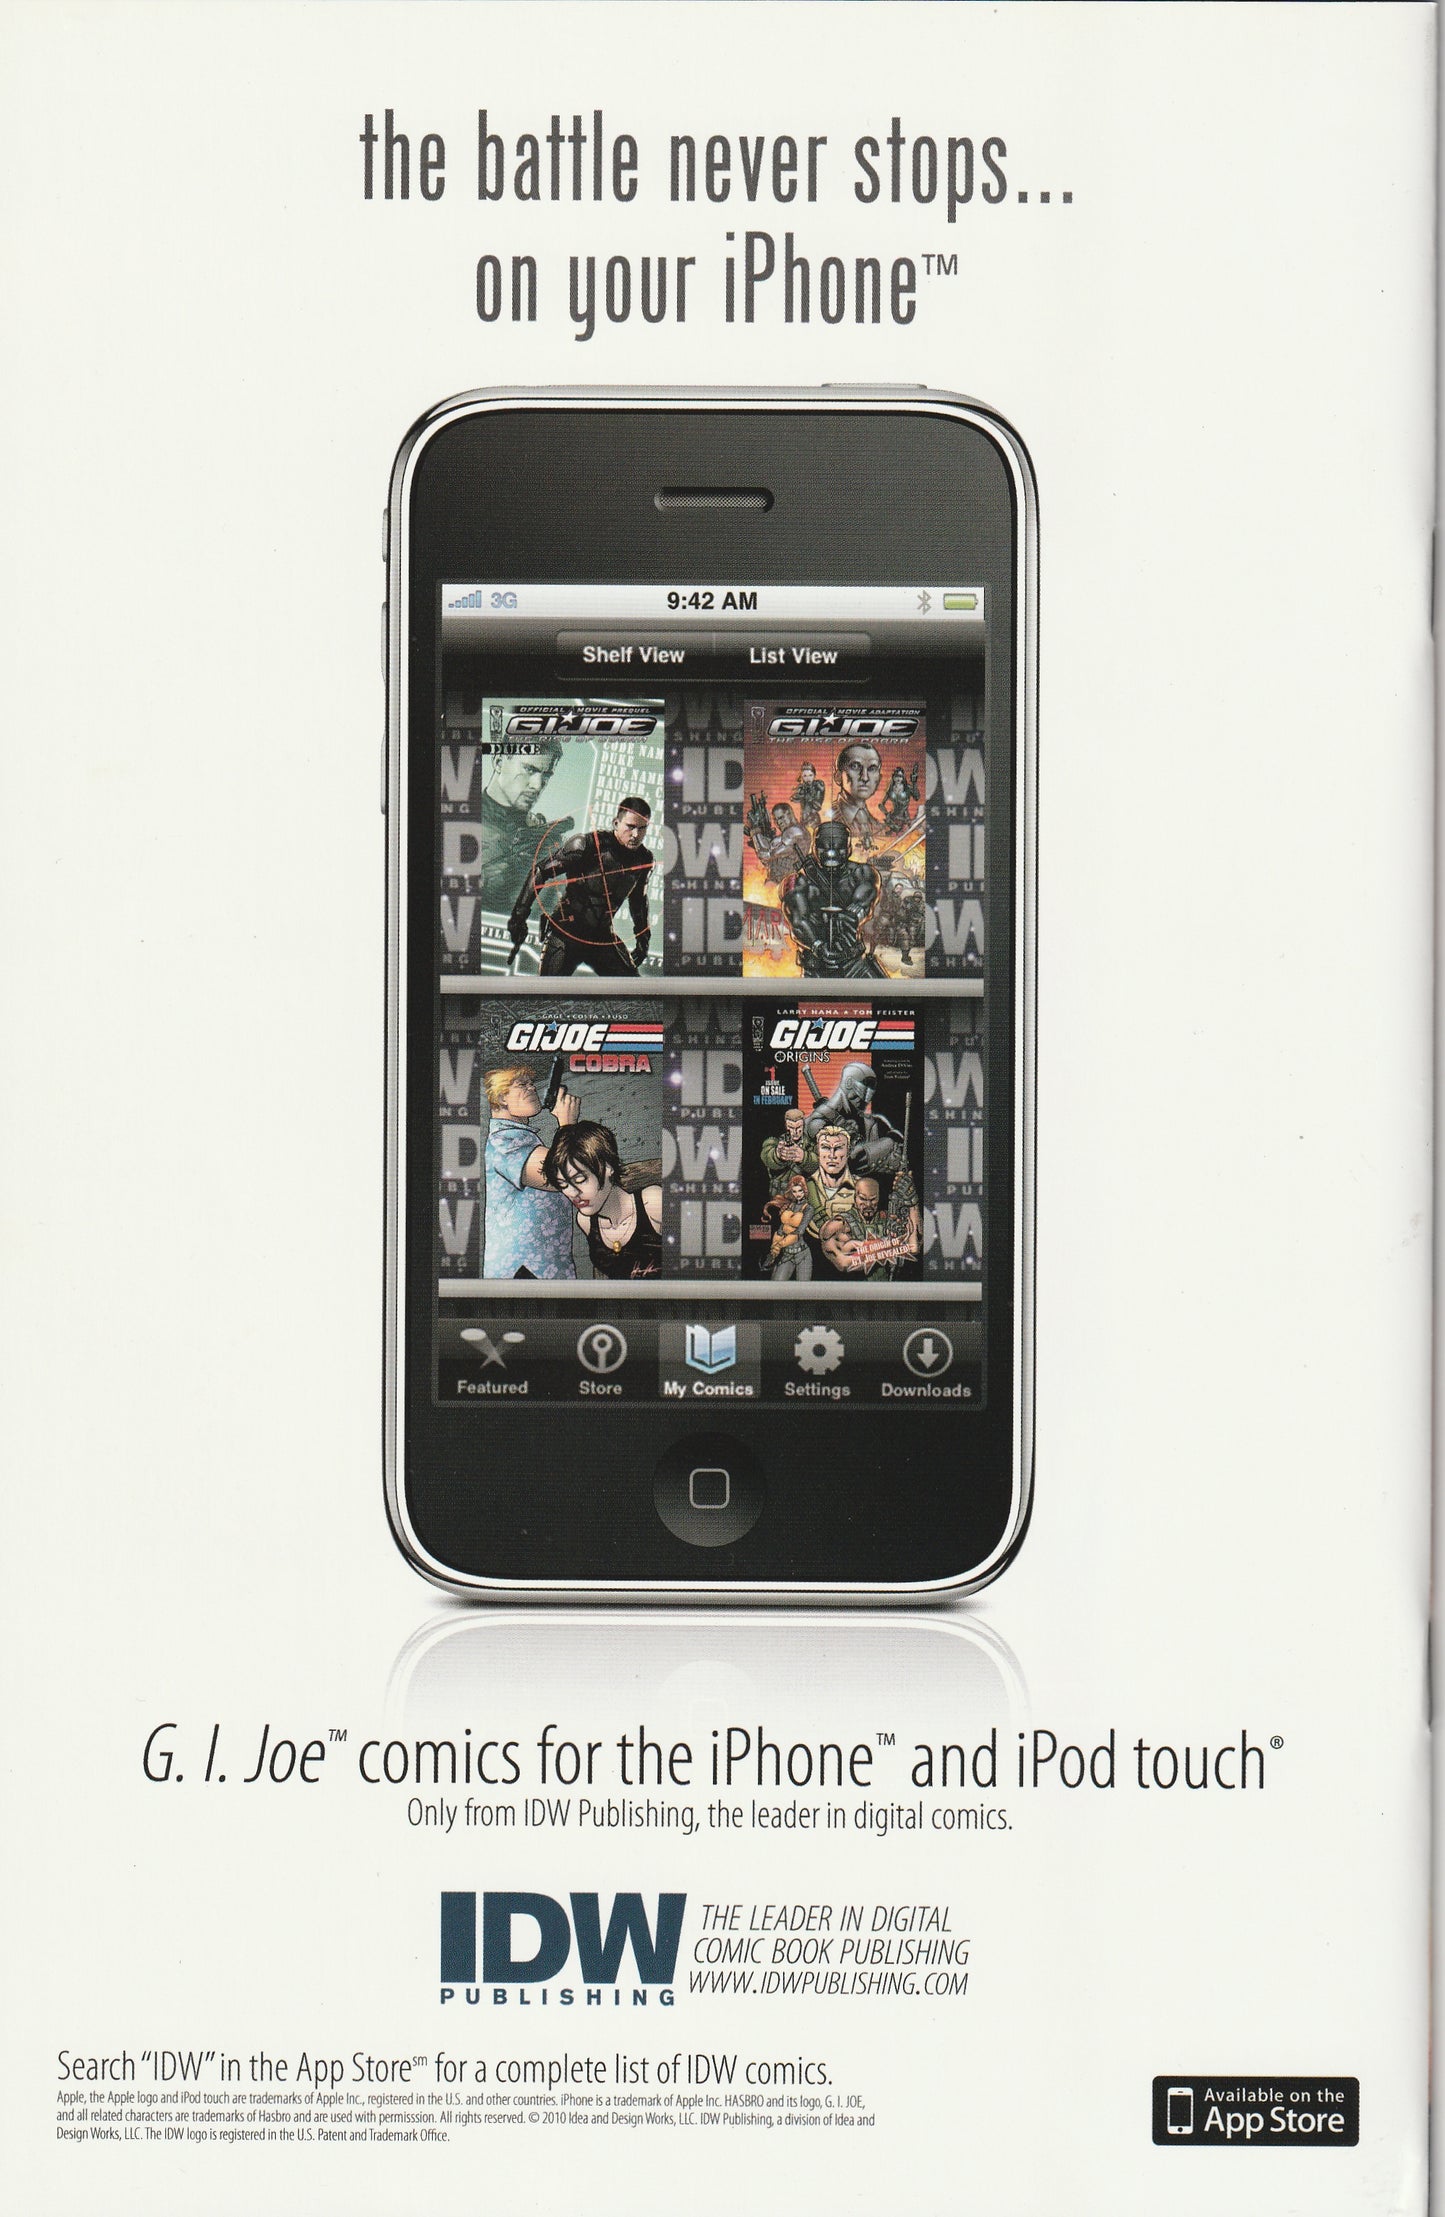 G.I. Joe: Operation HISS #3 (2010) - Joe Corroney Cover